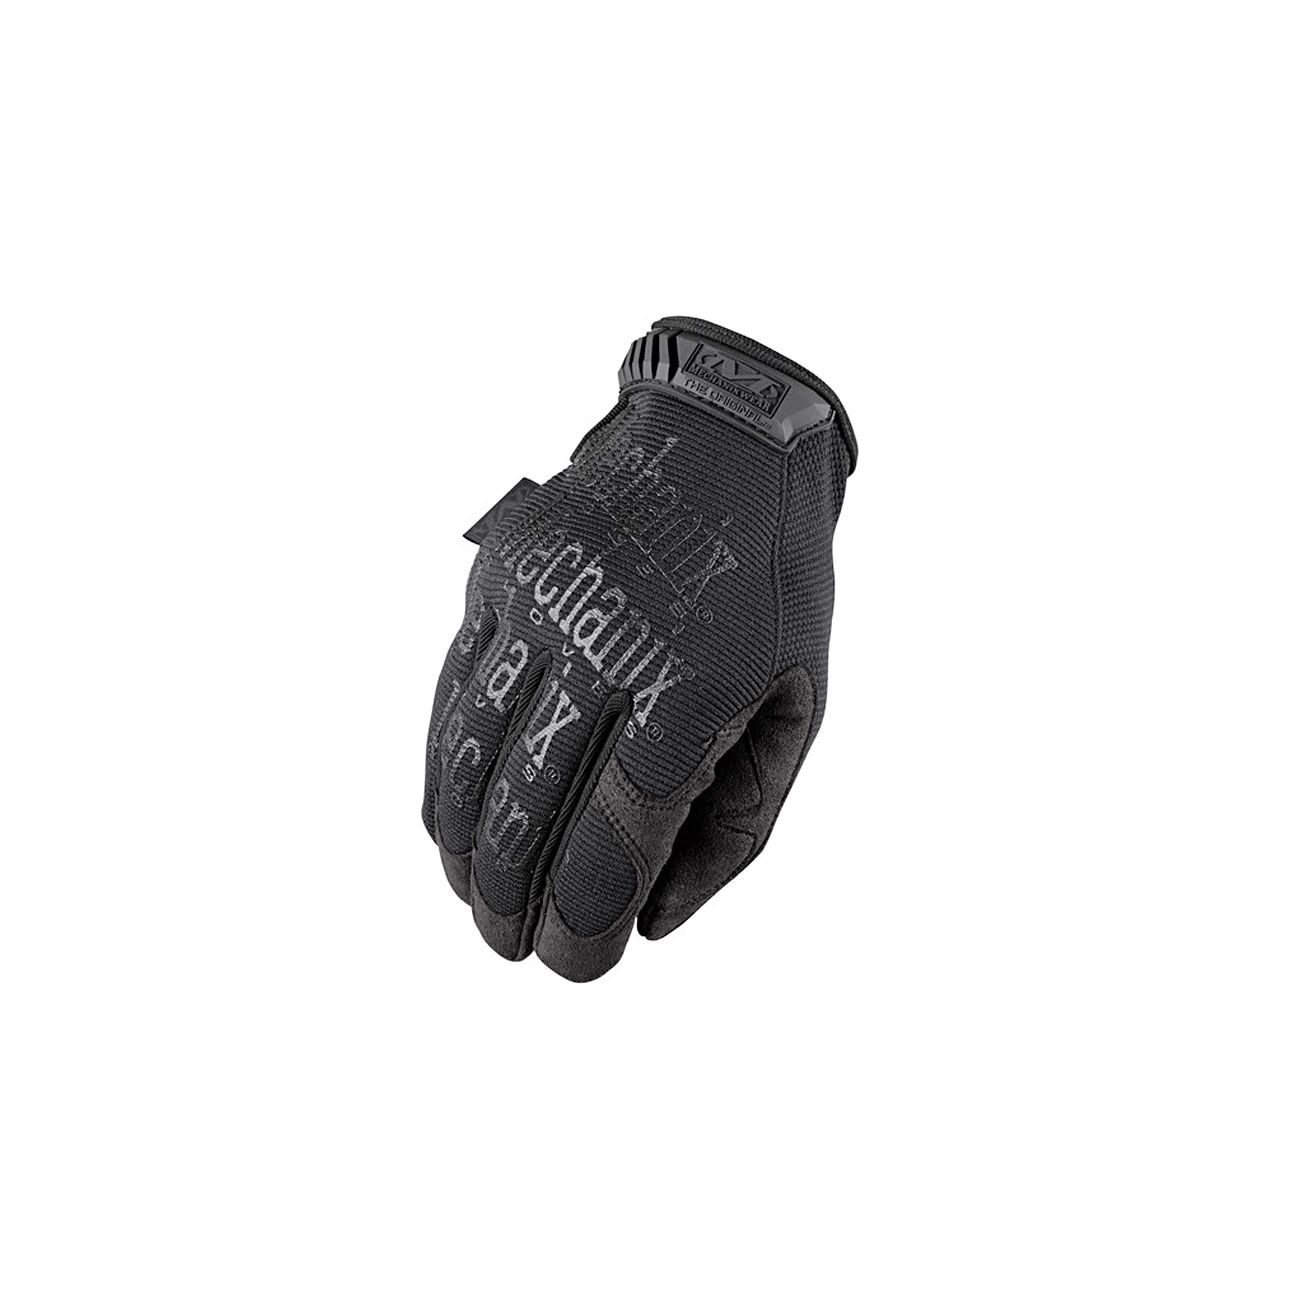 Mechanix Wear Original Glove Handschuhe covert